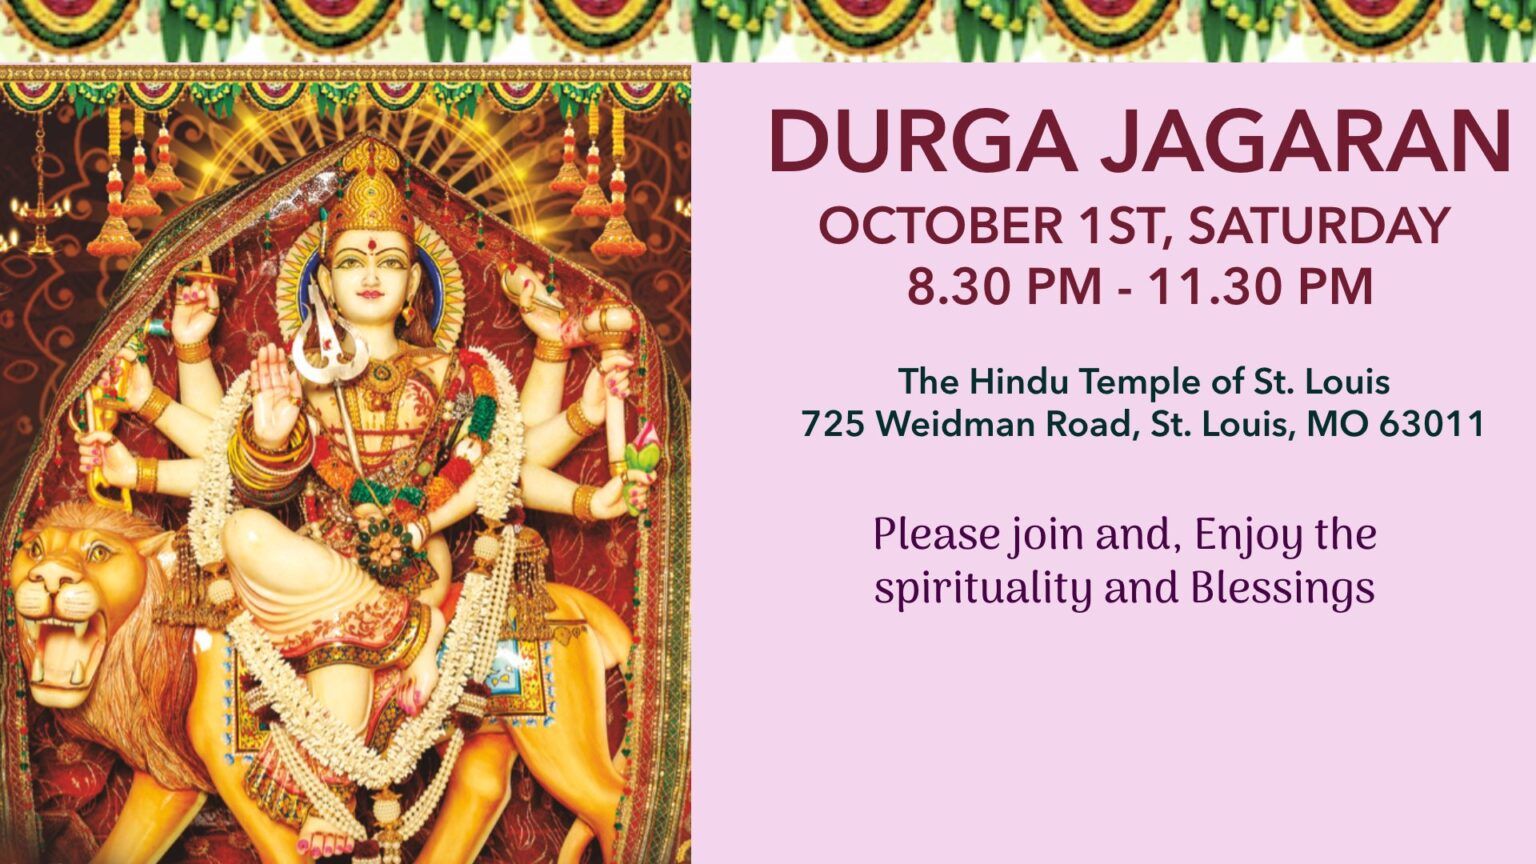 Durga Jagaran